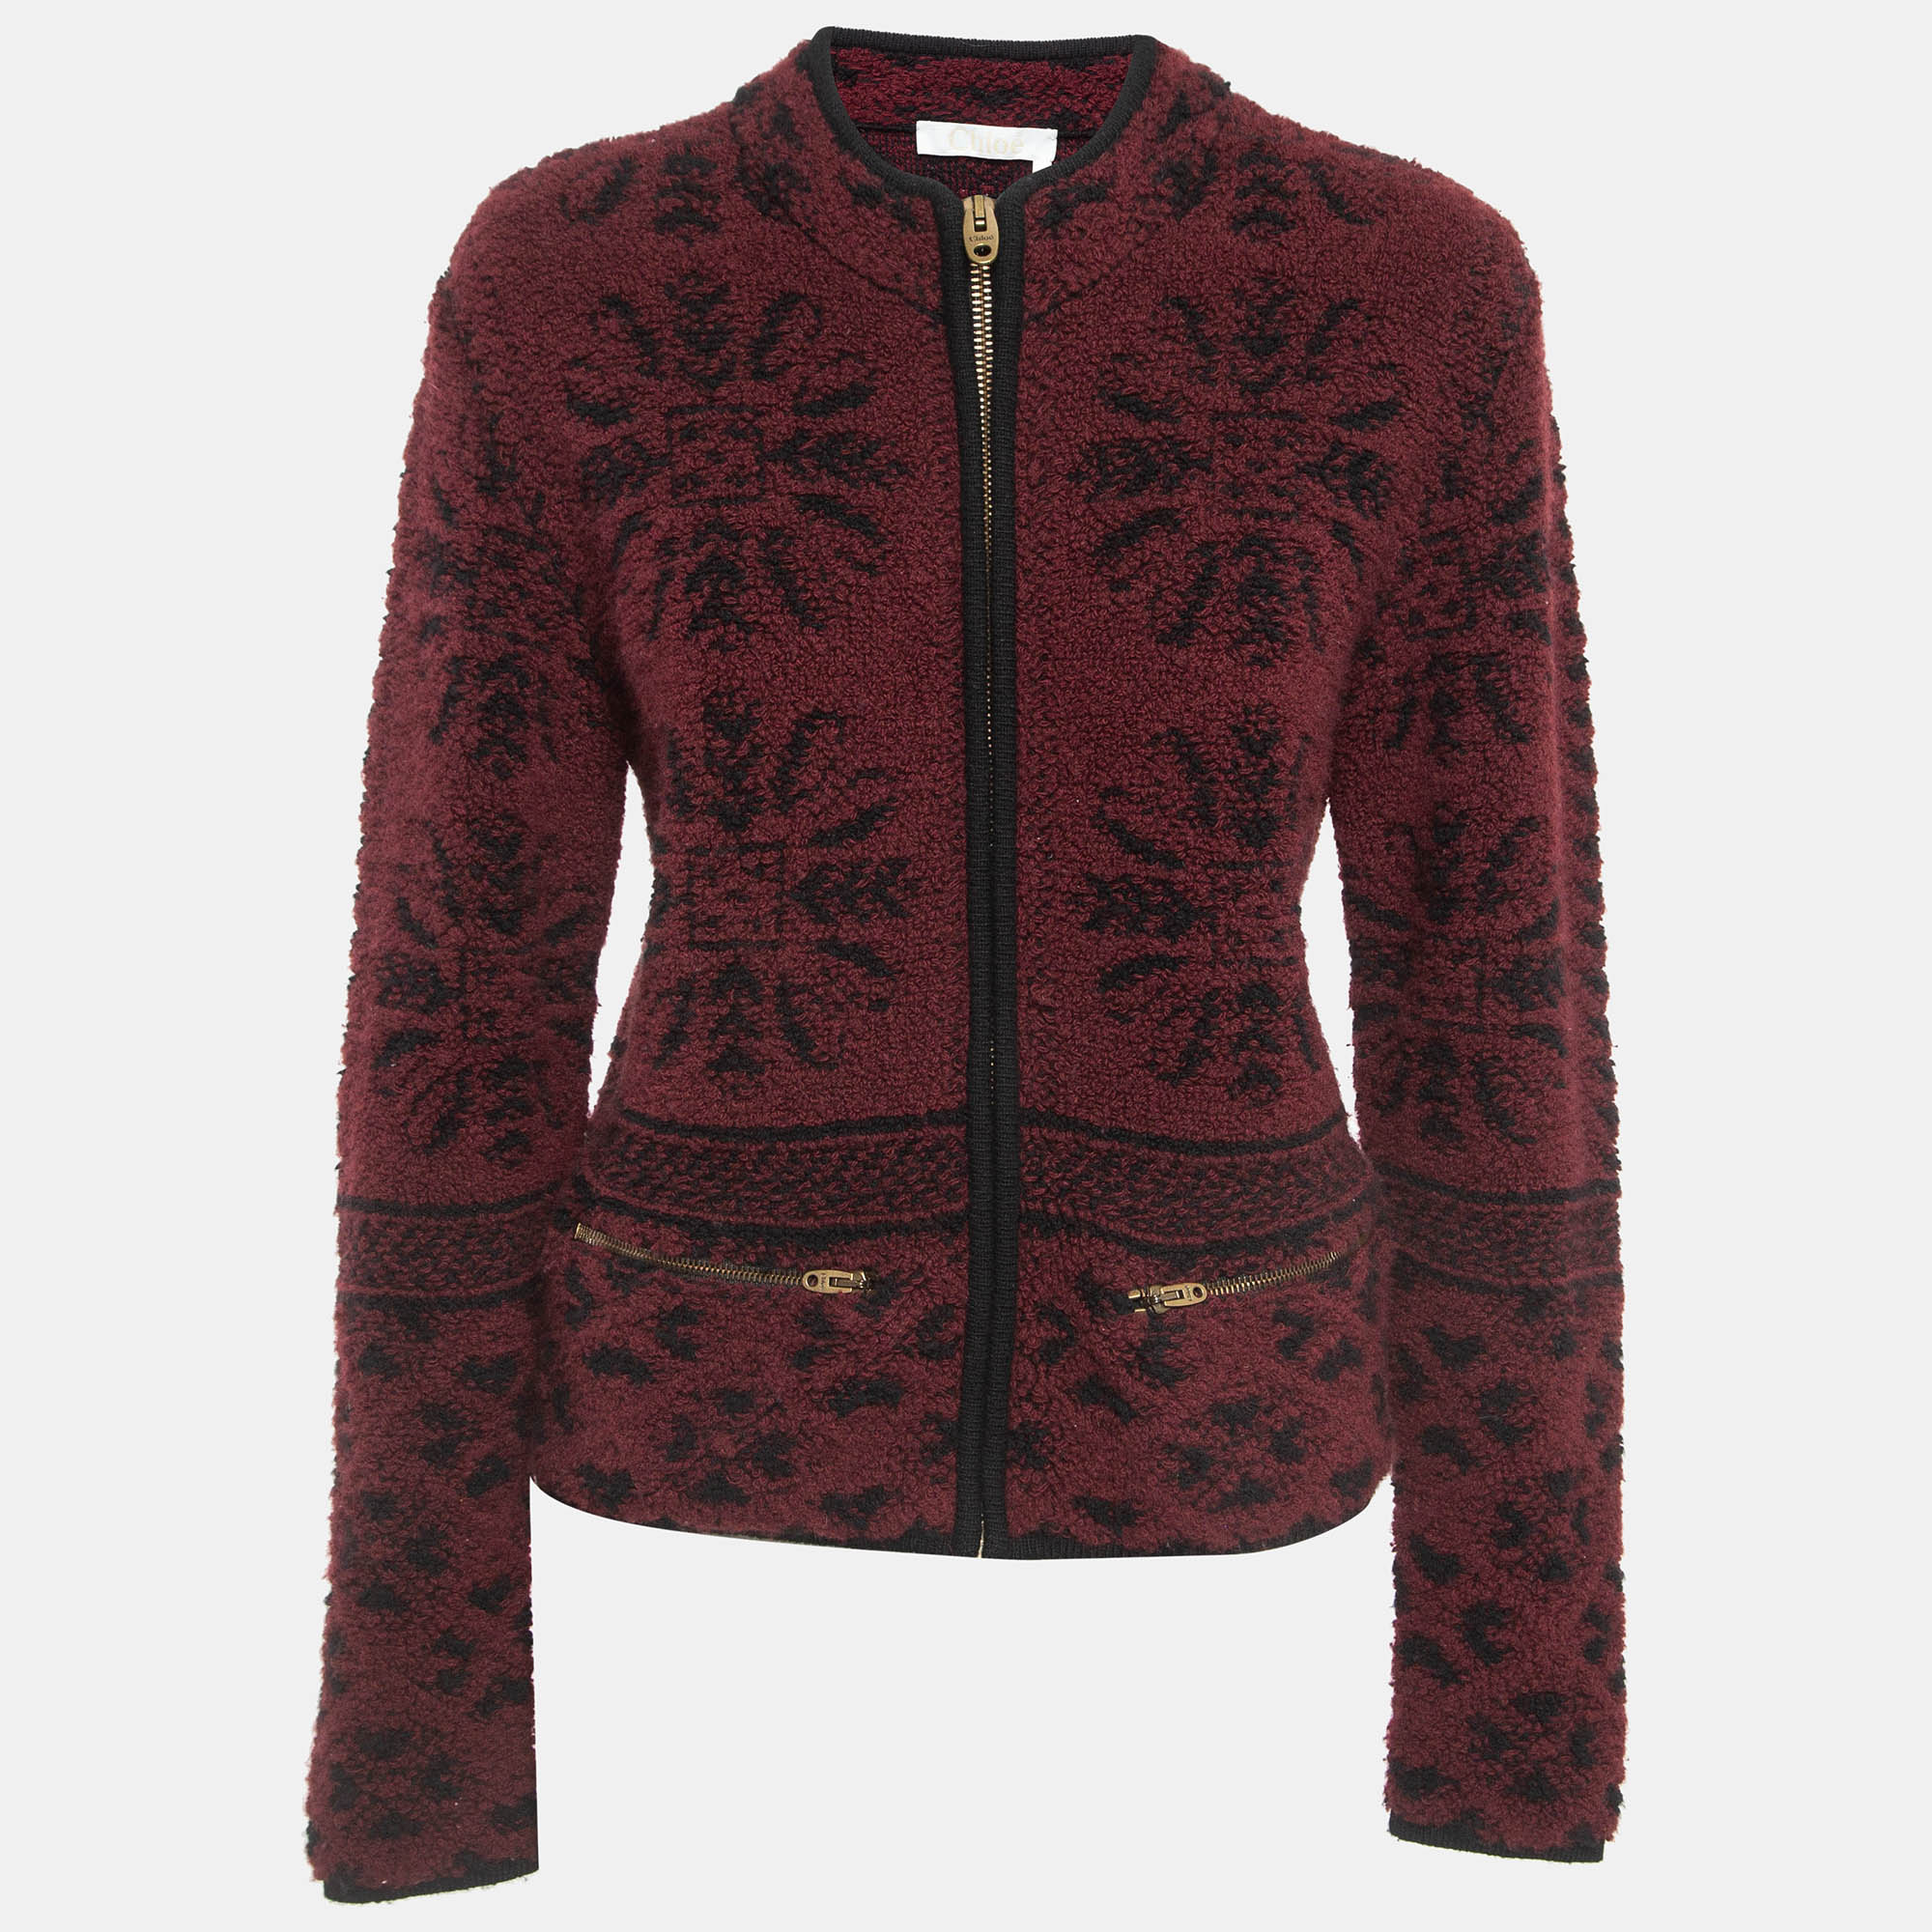 Chloe burgundy fleece zip front jacket m